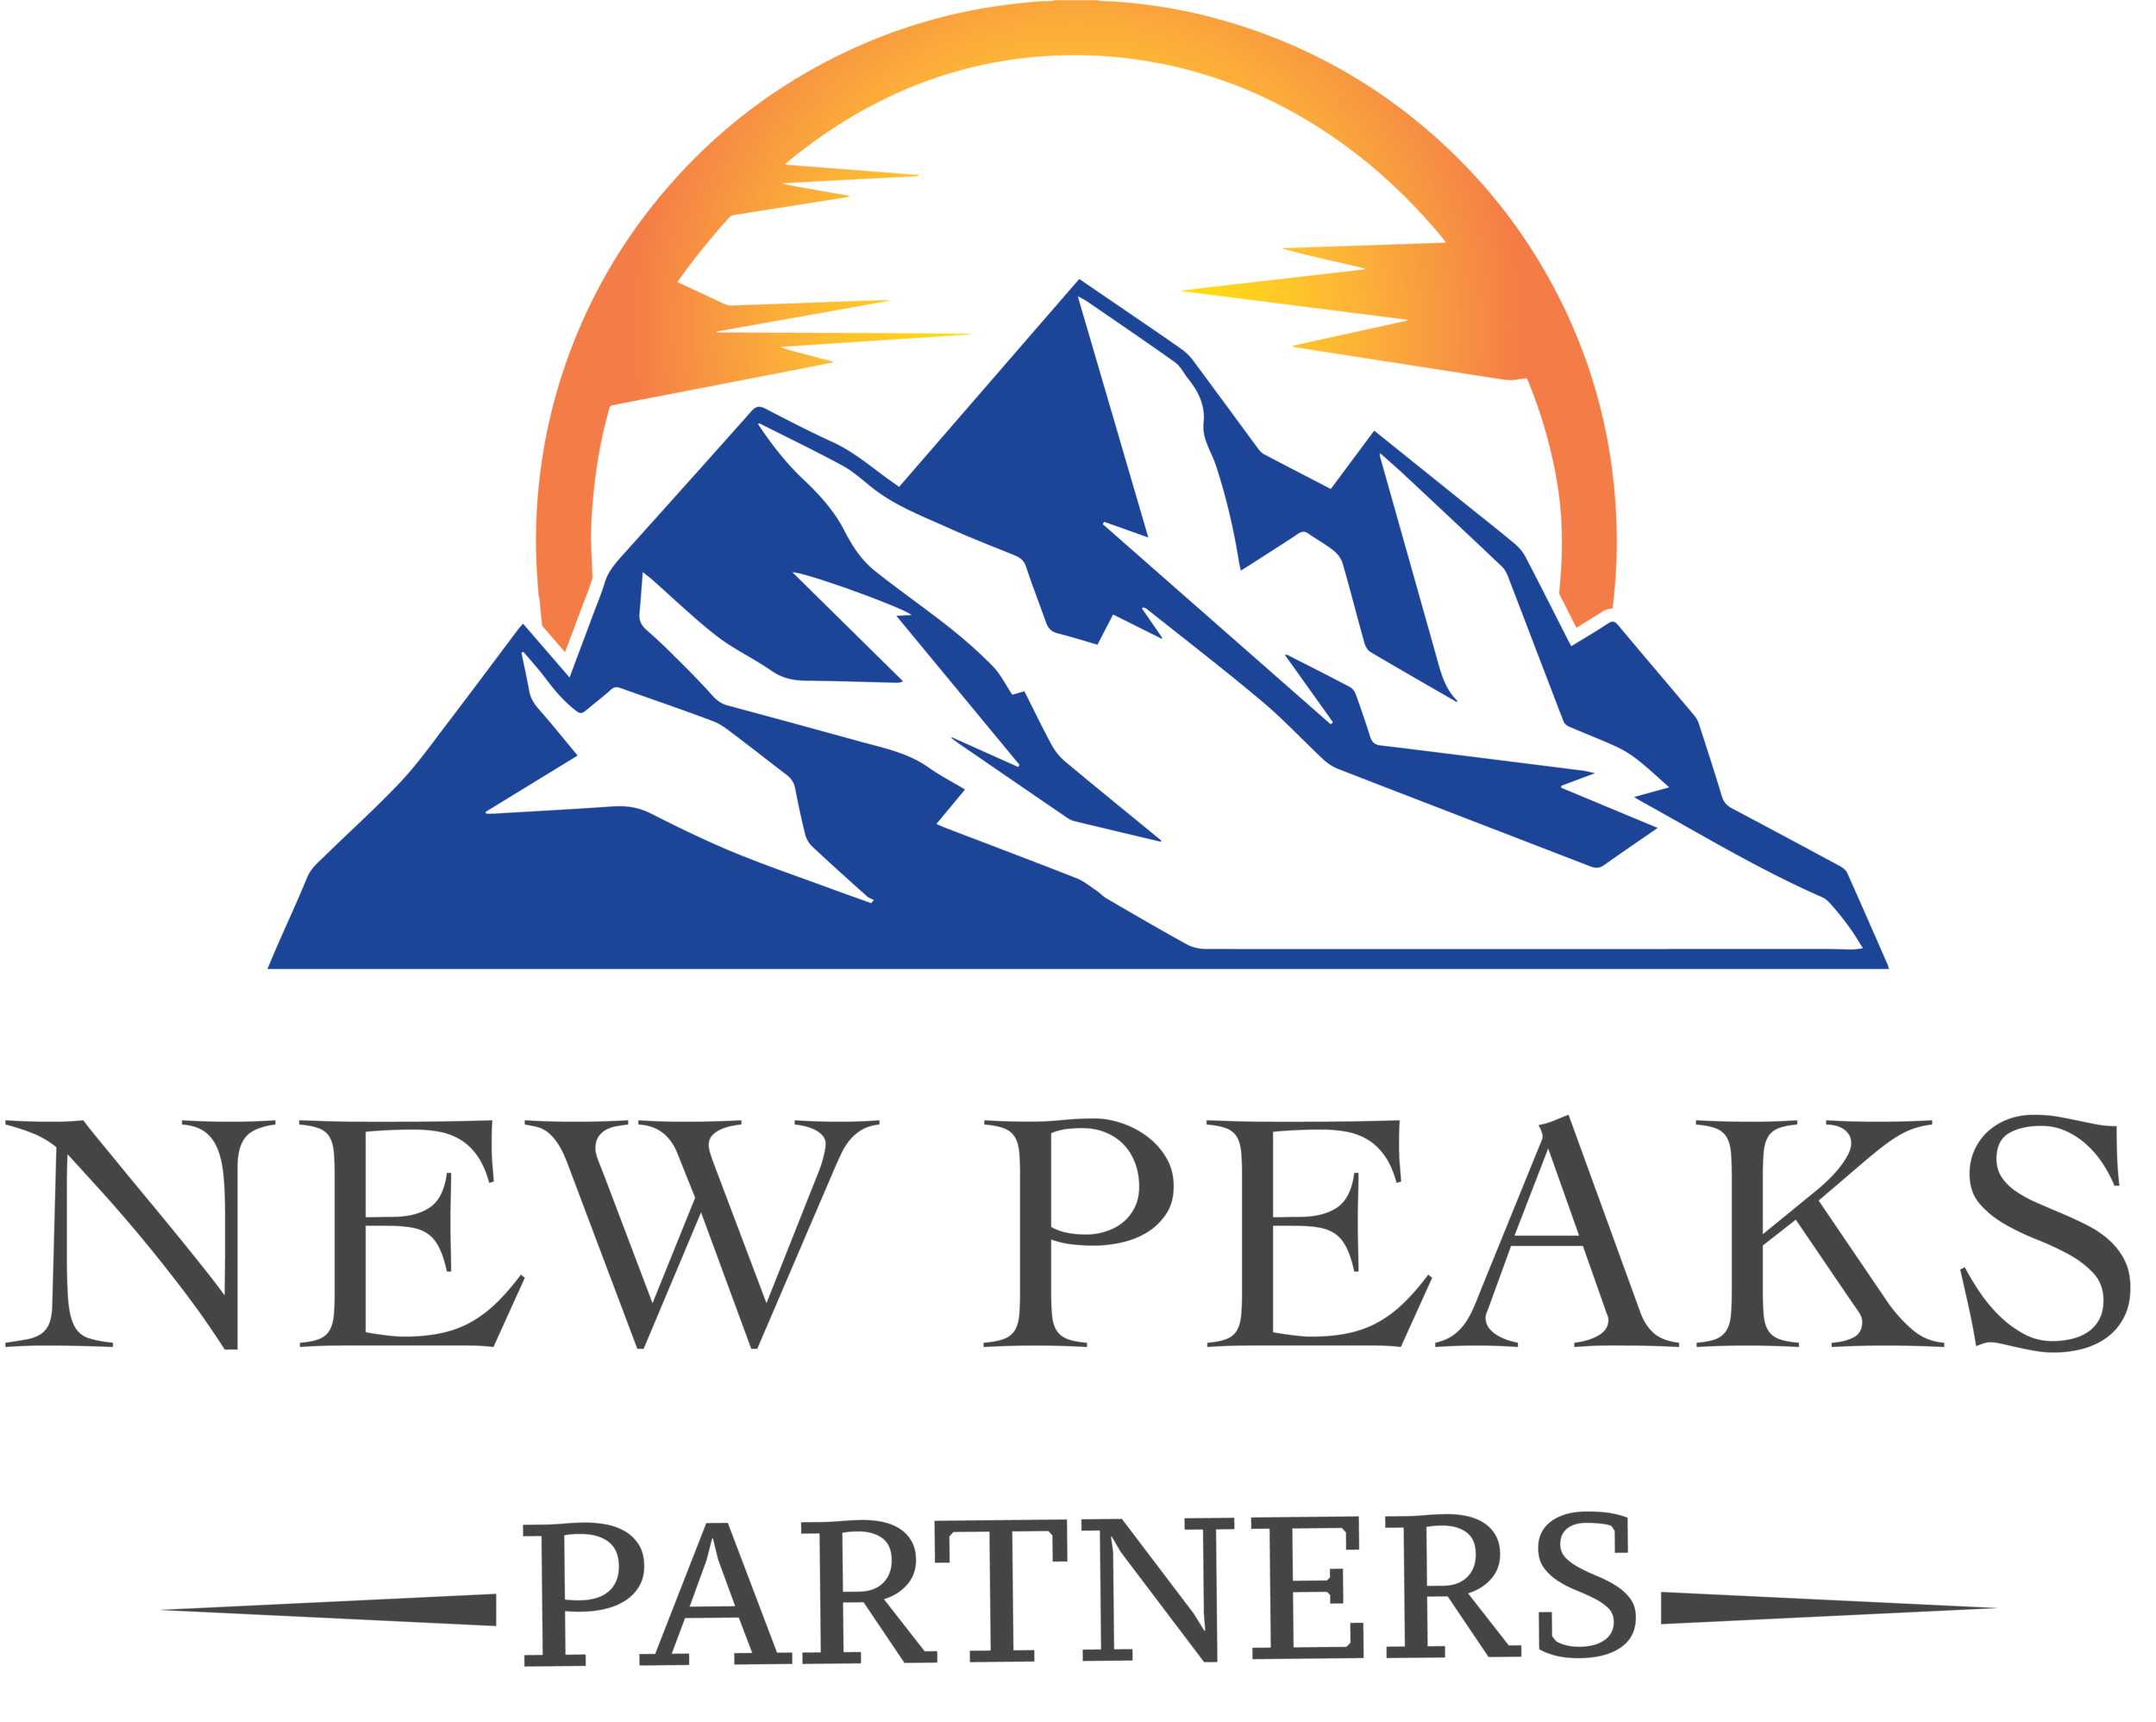 New Peaks Partners